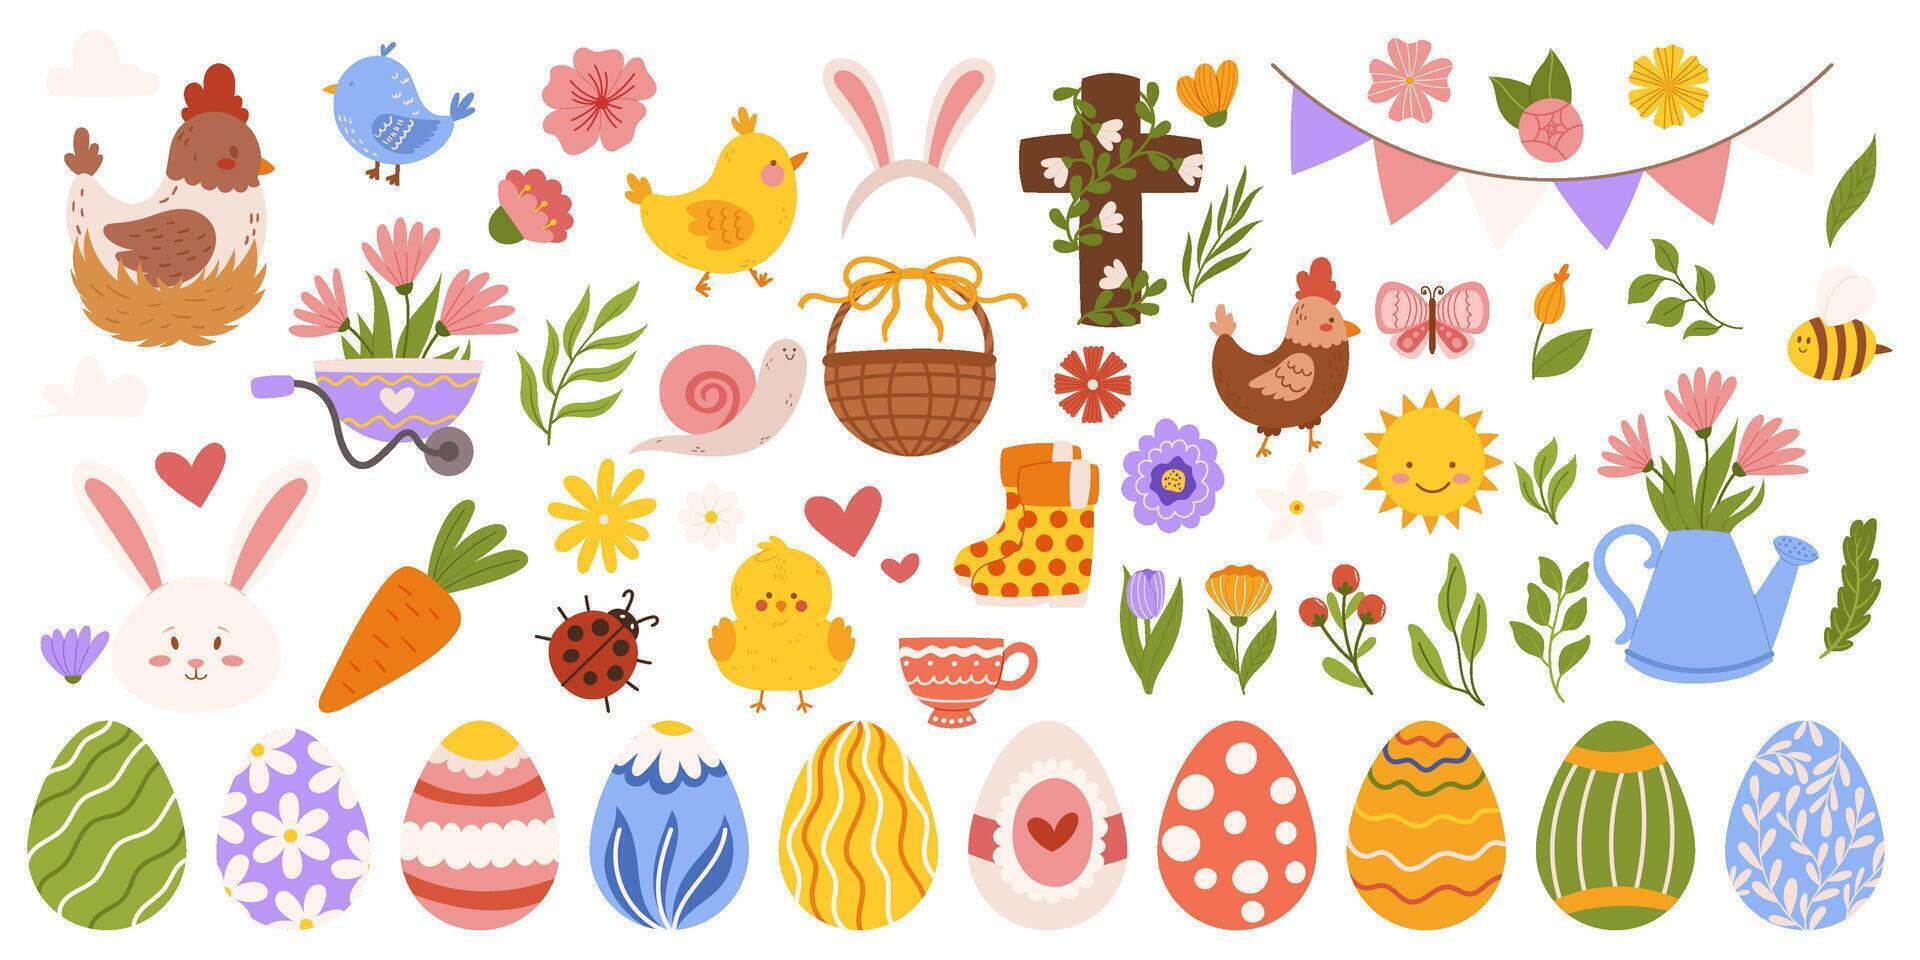 Páscoa grande coleção com diferente elementos em tema - pintado ovos, coelhinho, galinhas e flores, Cruz. mão desenhado vetor plano elementos.